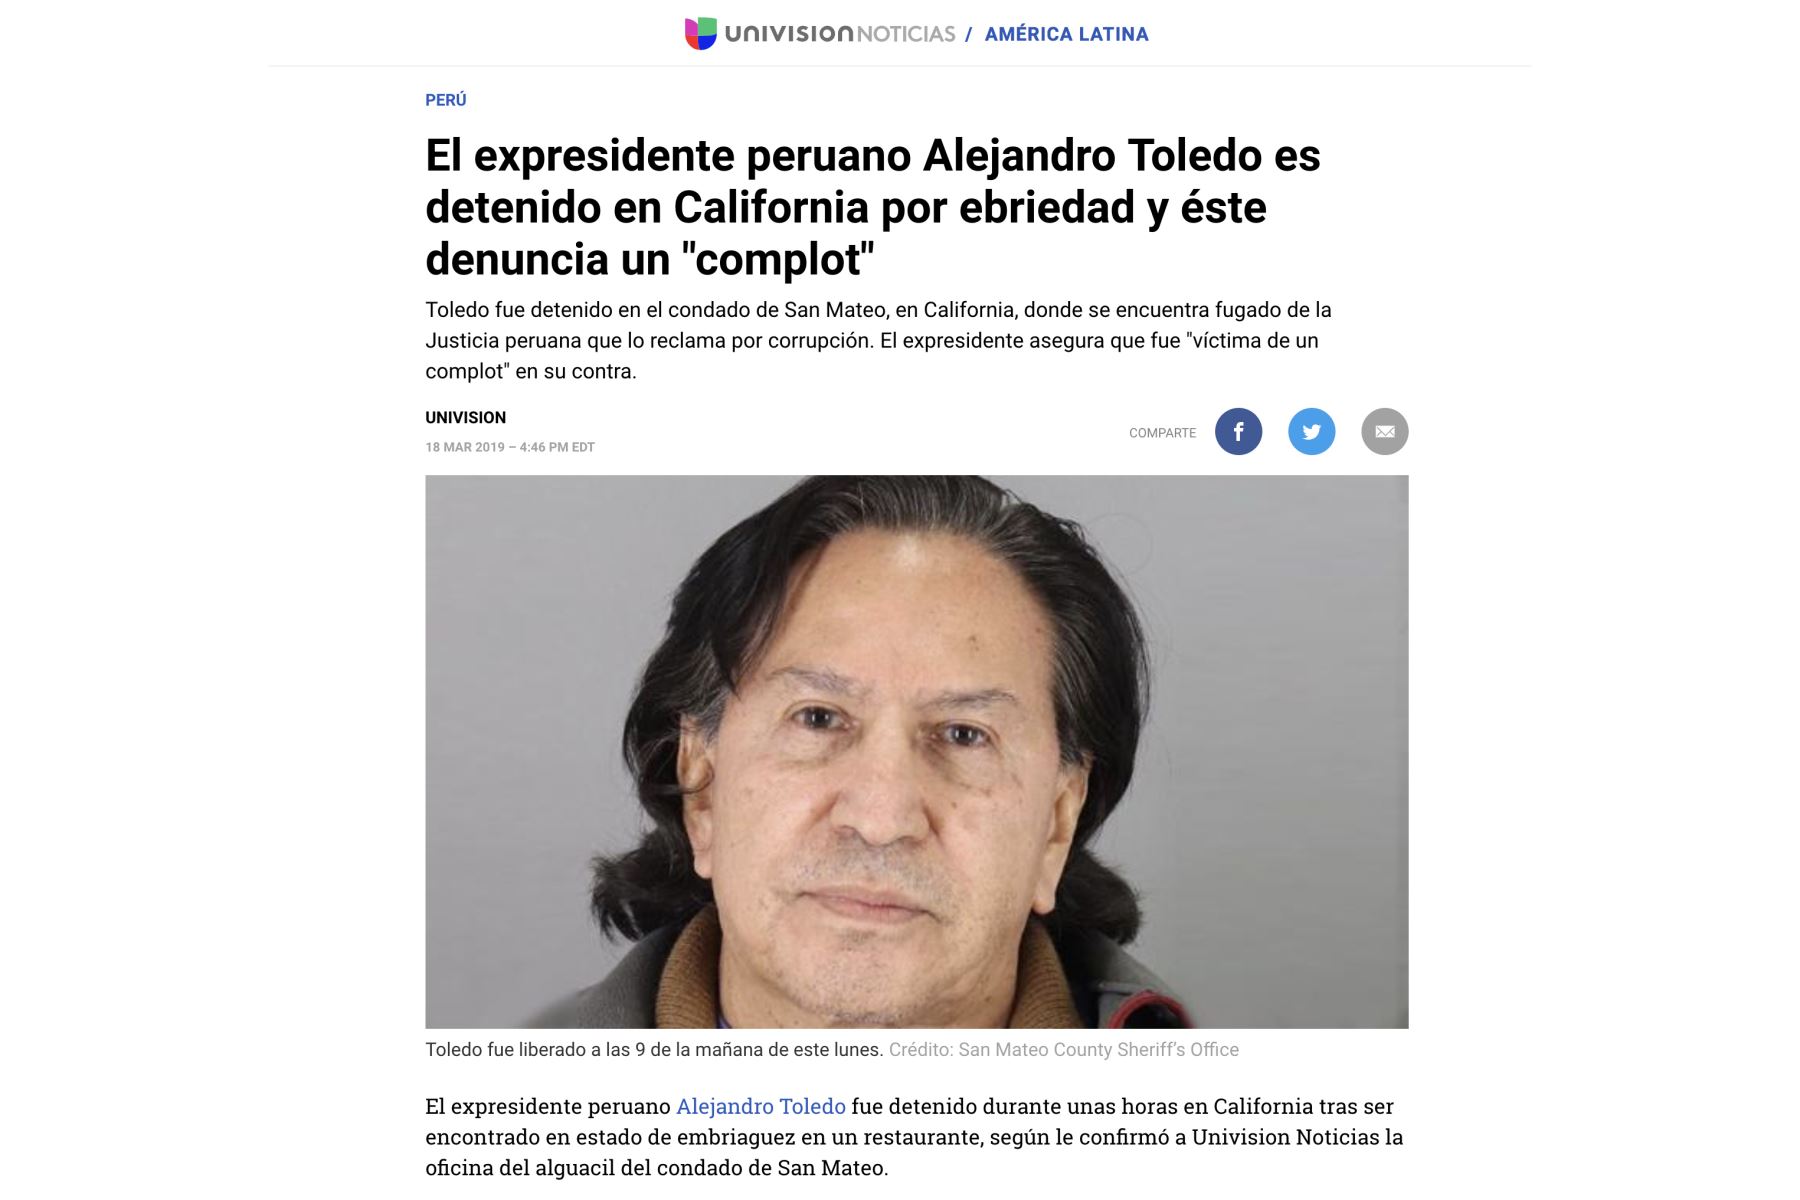 Así informan los medios internacionales sobre la detención de Alejandro Toledo por estar en estado de ebriedad, en los EE.UU.
Foto: ANDINA/Internet